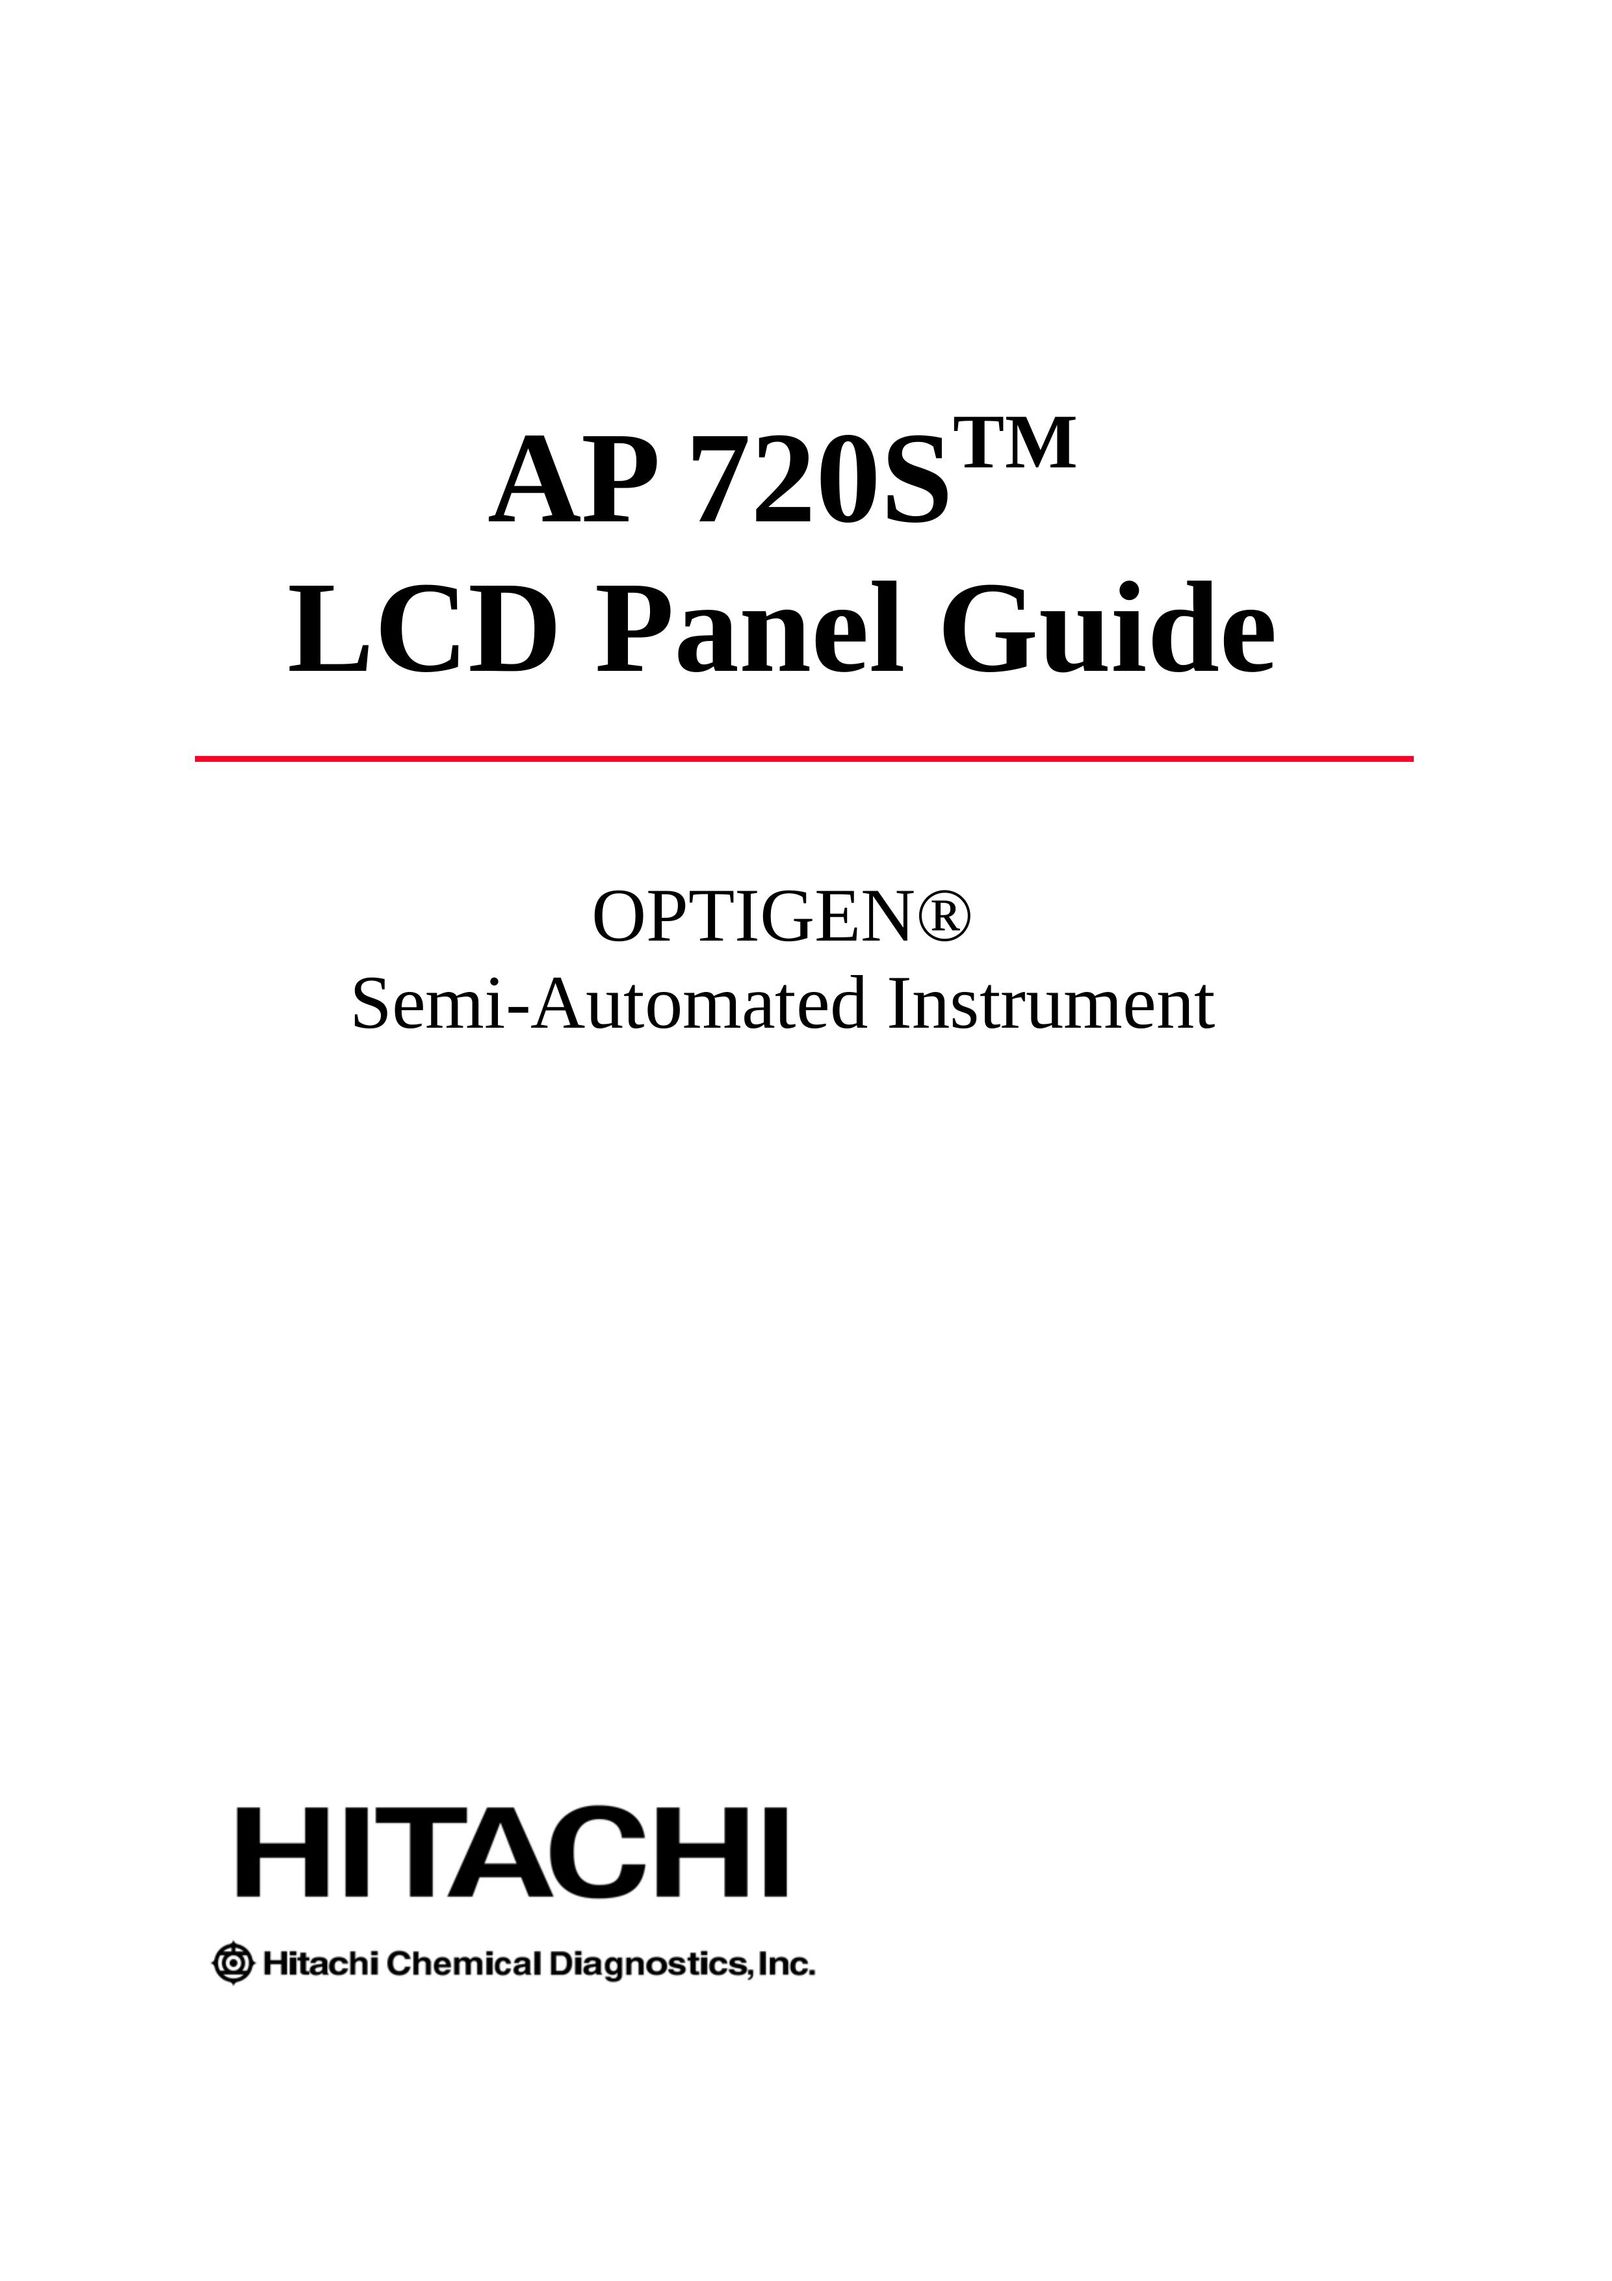 Hitachi AP 720STM Cable Box User Manual